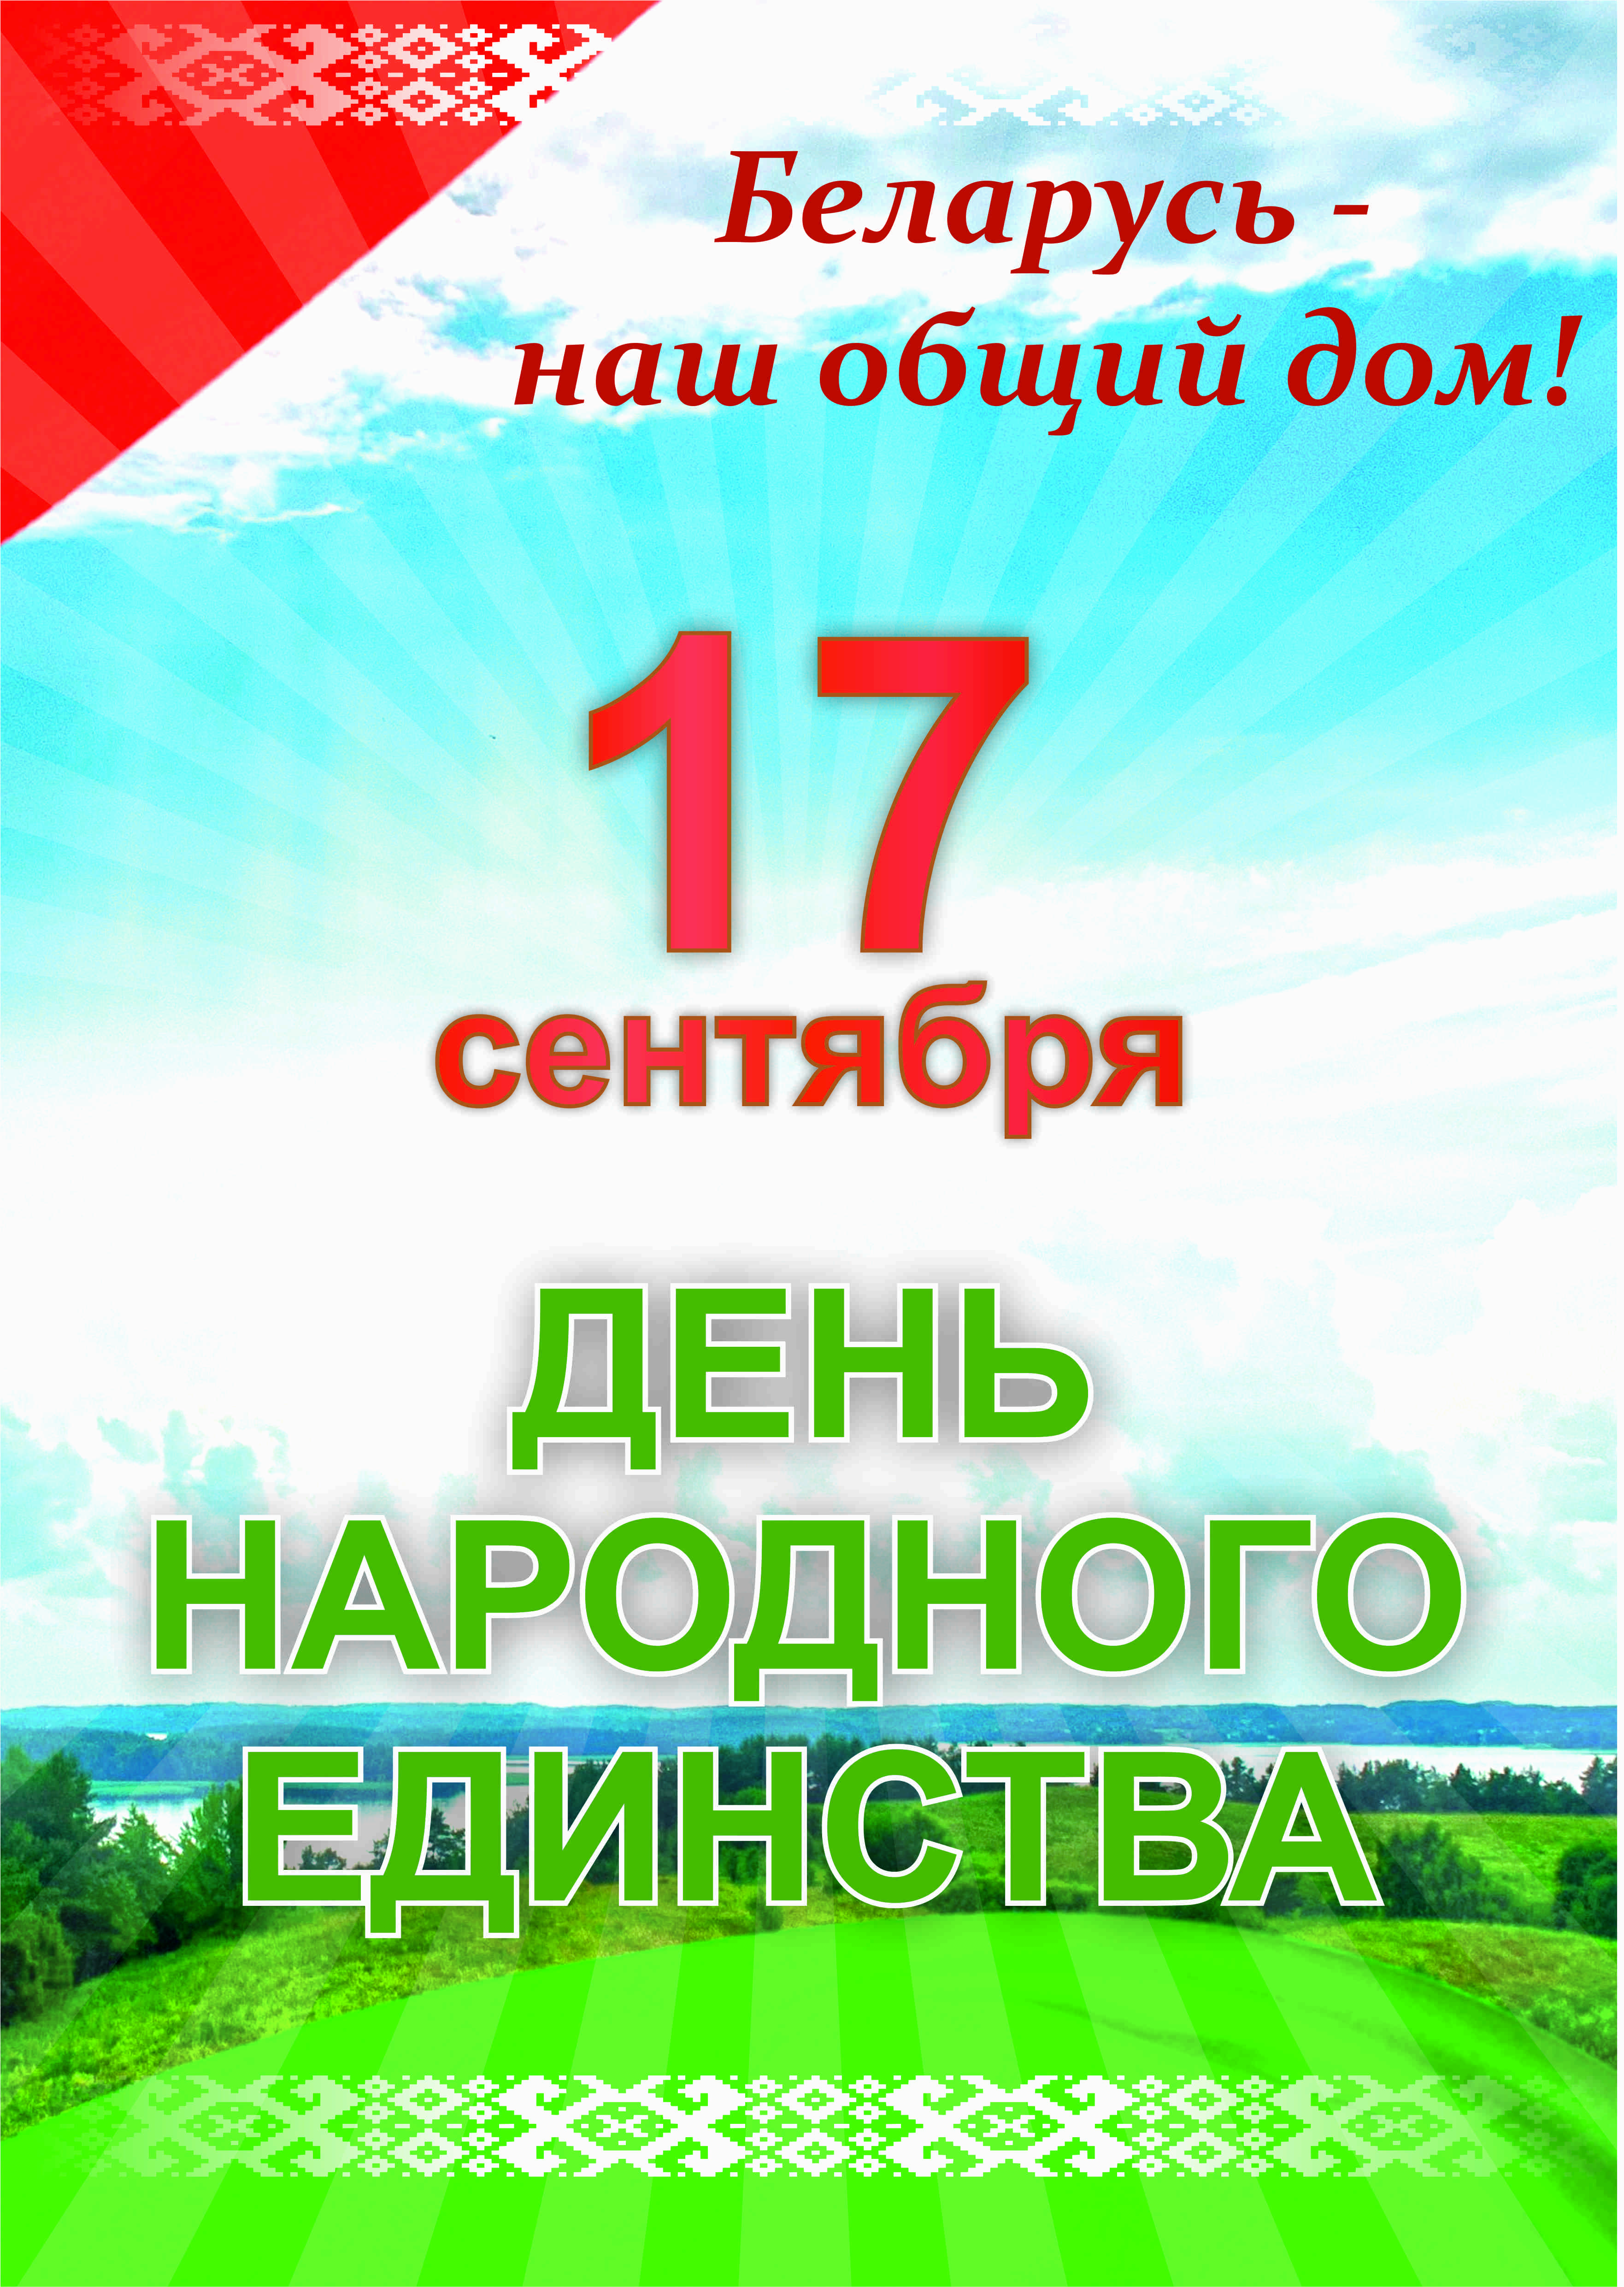 С Днём народного единства, Беларусь!